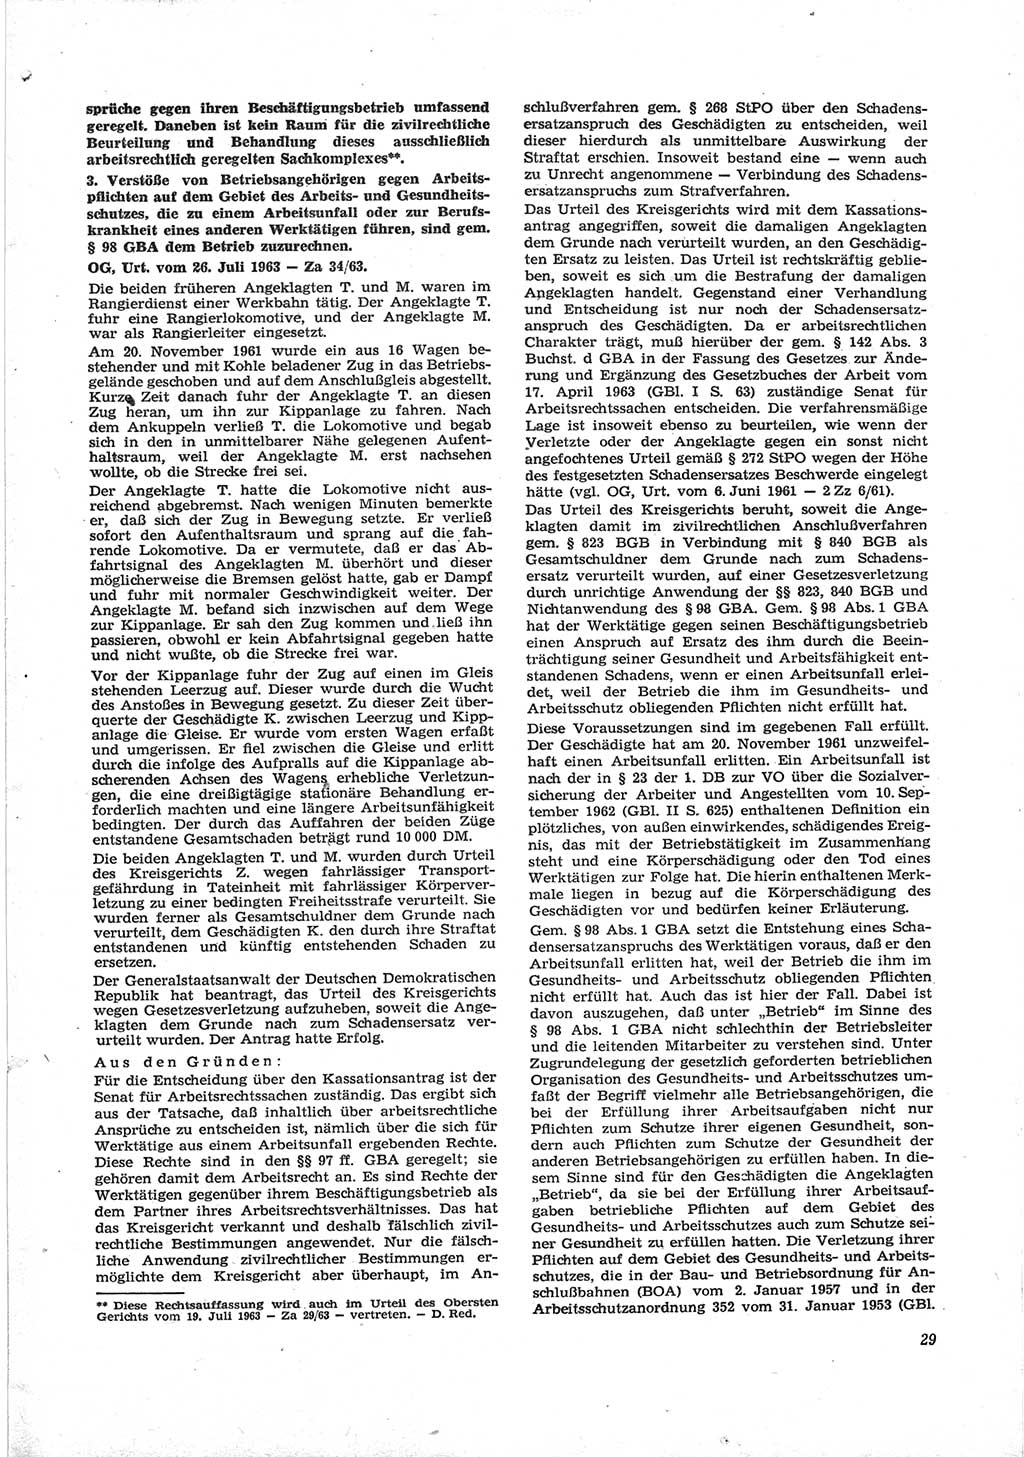 Neue Justiz (NJ), Zeitschrift für Recht und Rechtswissenschaft [Deutsche Demokratische Republik (DDR)], 18. Jahrgang 1964, Seite 29 (NJ DDR 1964, S. 29)